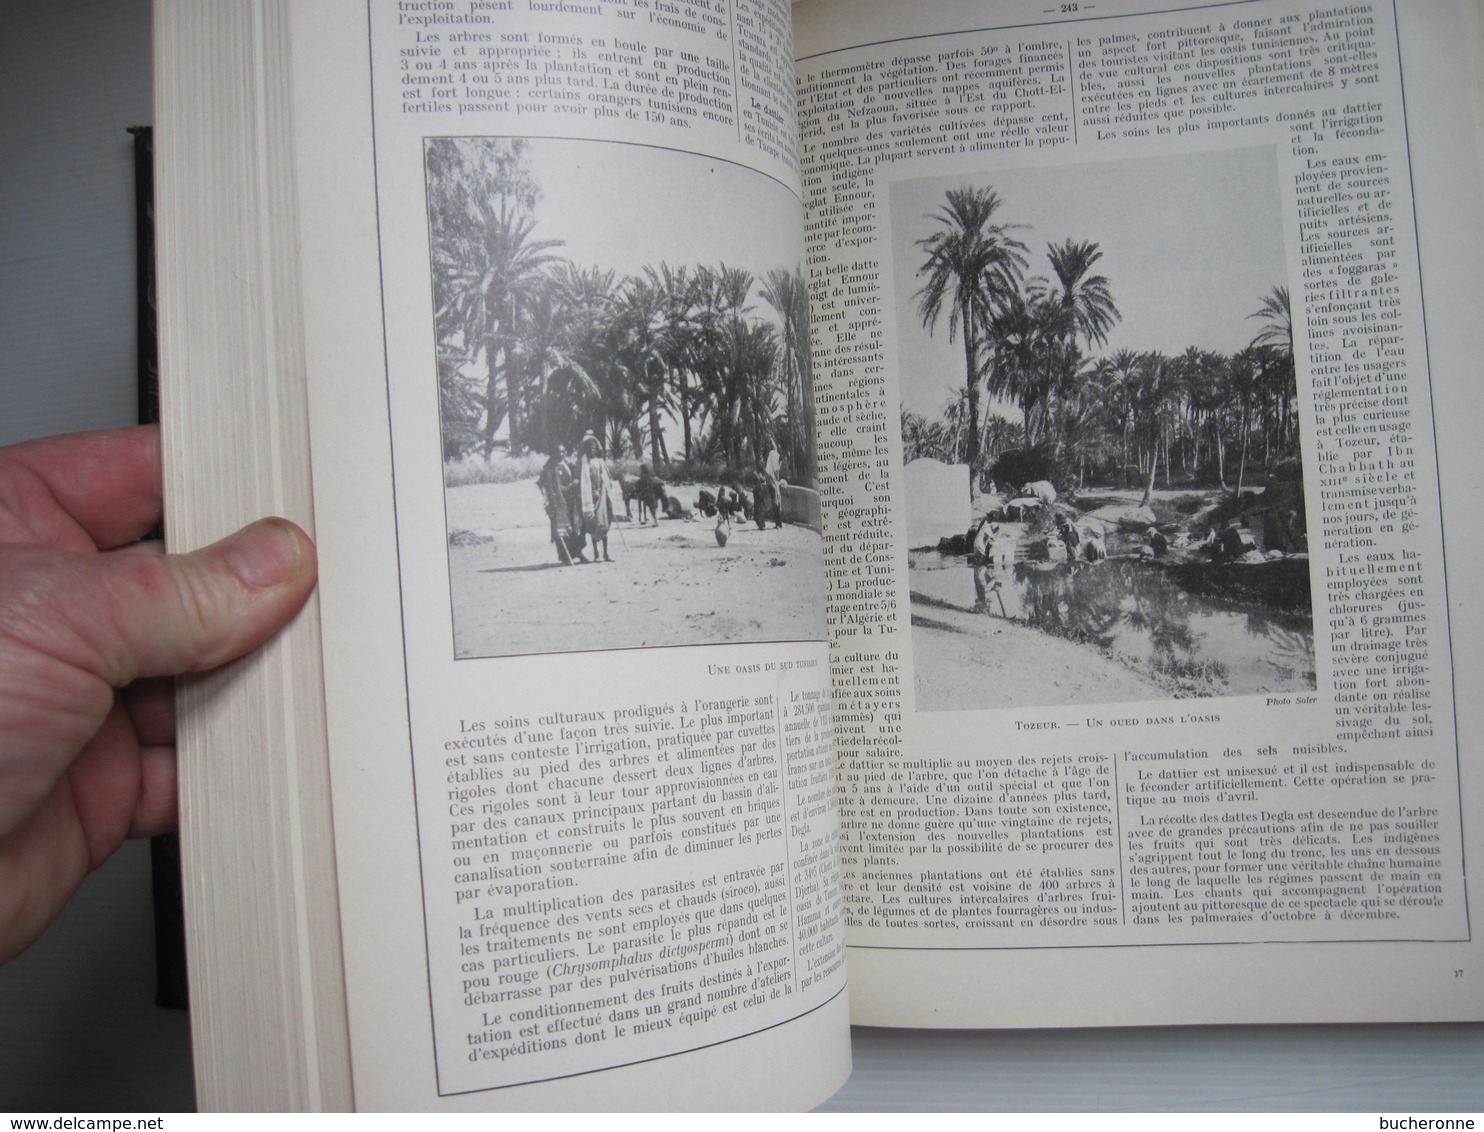 TUNISIE Encyclopedie Coloniale et Maritime 1948 LANG BLANCHONG nombreuses cartes & photos 500 pages TBE voir couverture